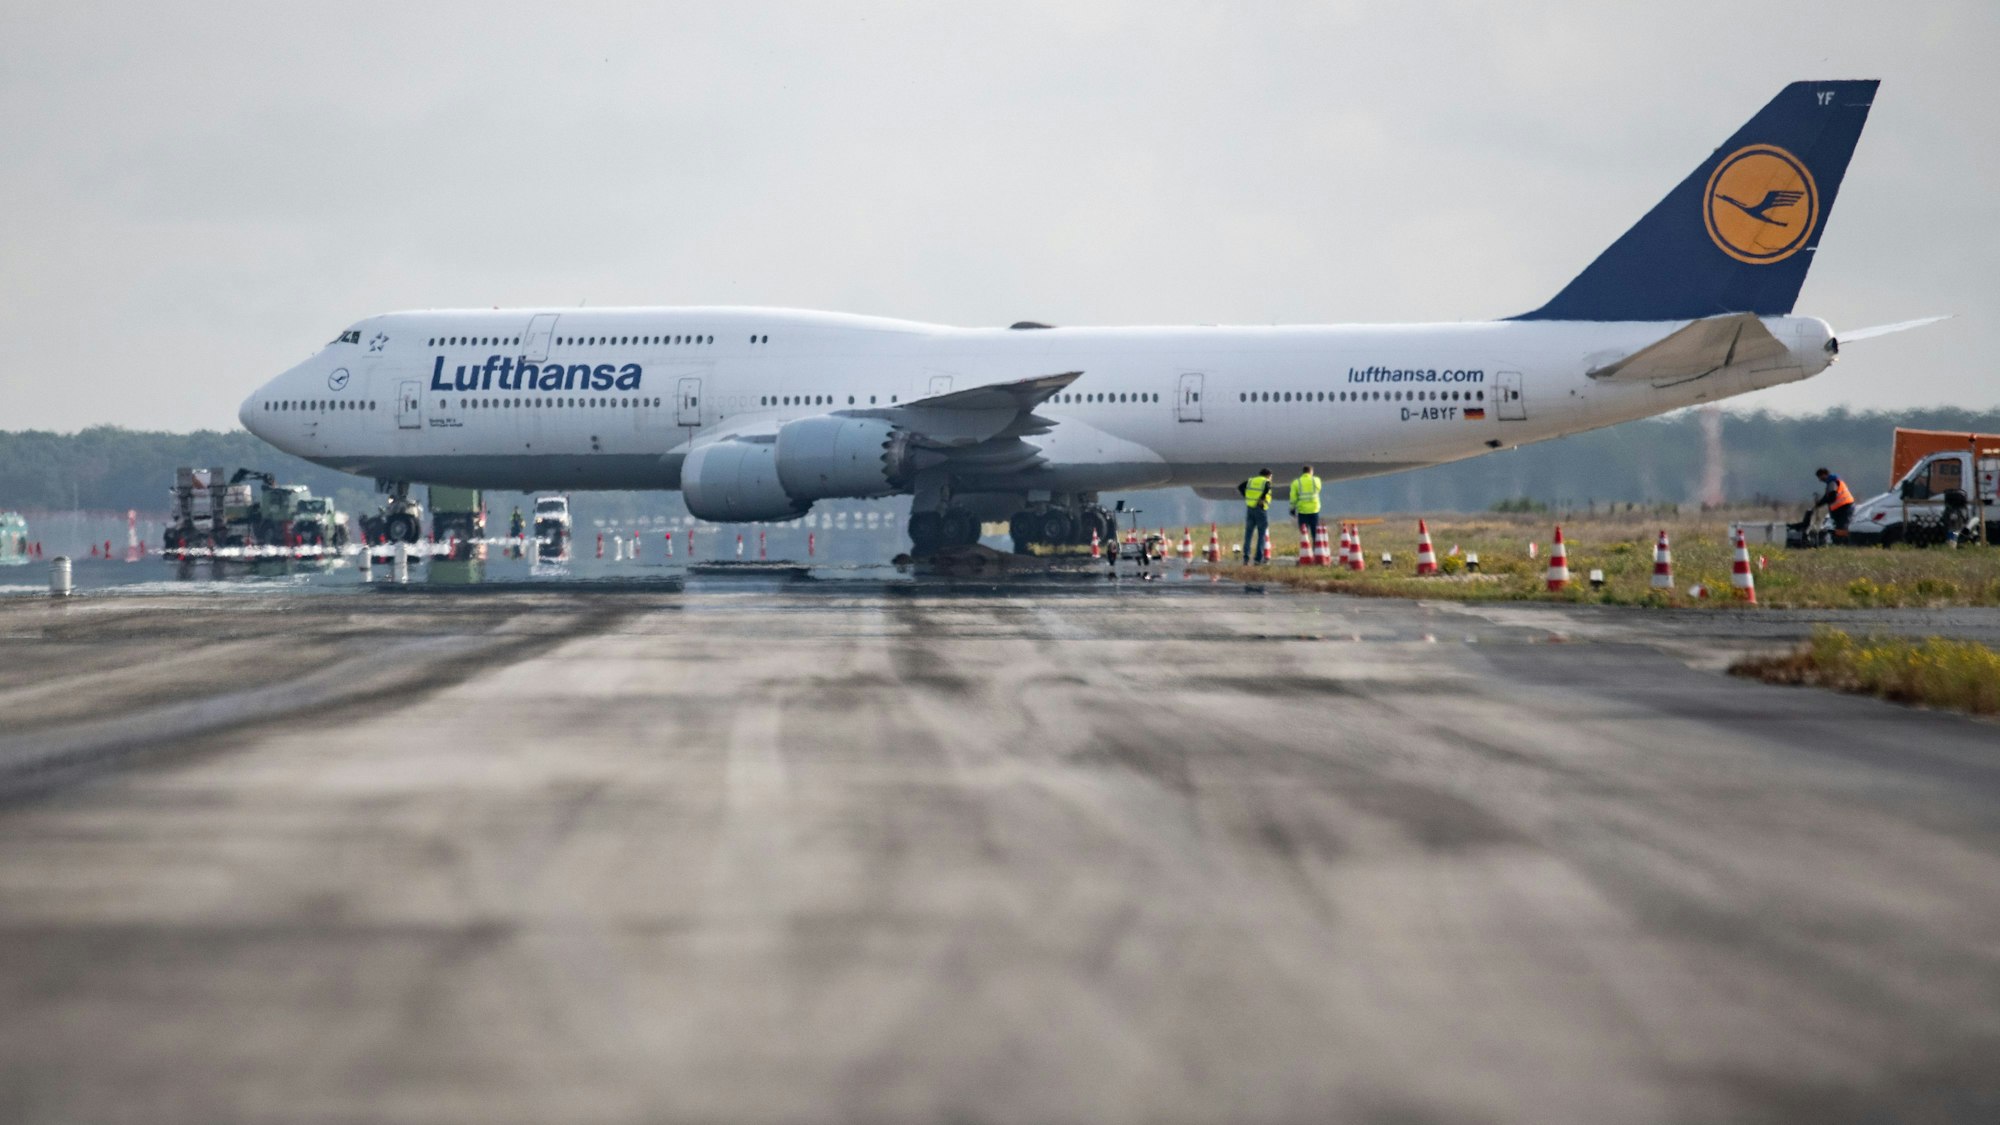 Eine Boeing 747 der Lufthansa kreuzt die derzeit für Sanierungsarbeiten gesperrte Landebahn Center des Flughafens in Frankfurt. Die Start- und Landebahn wird derzeit auf einer Fläche von rund 10 Fußballfeldern komplett saniert und neu asphaltiert.